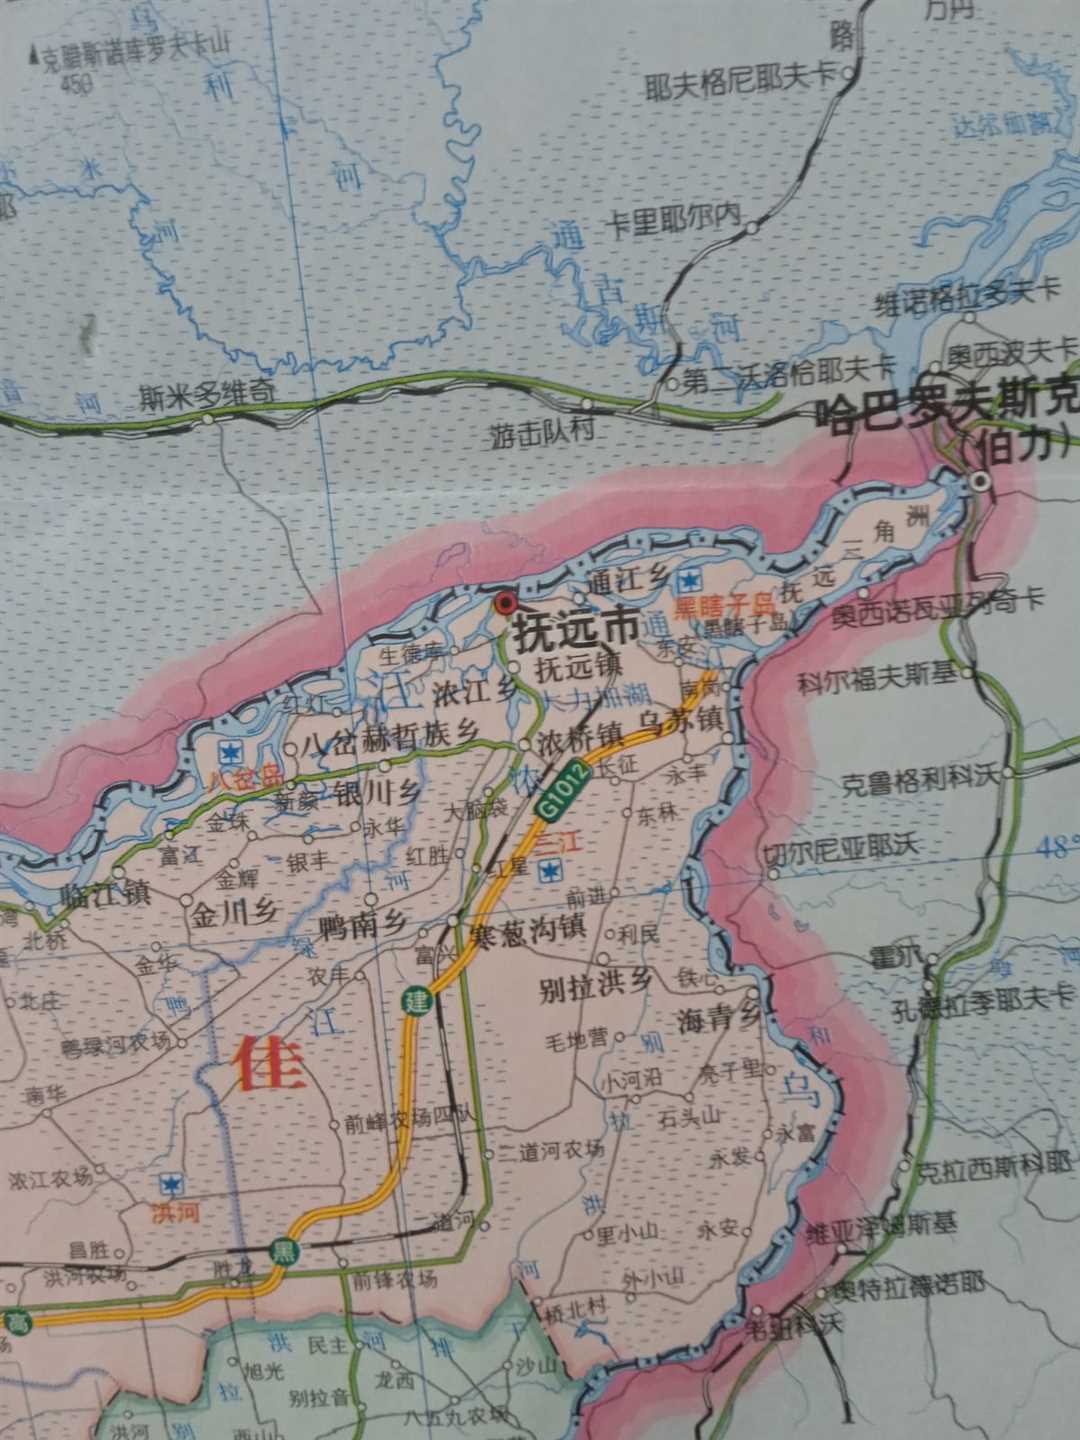 Исследование уникальных туристических маршрутов по географии Китая